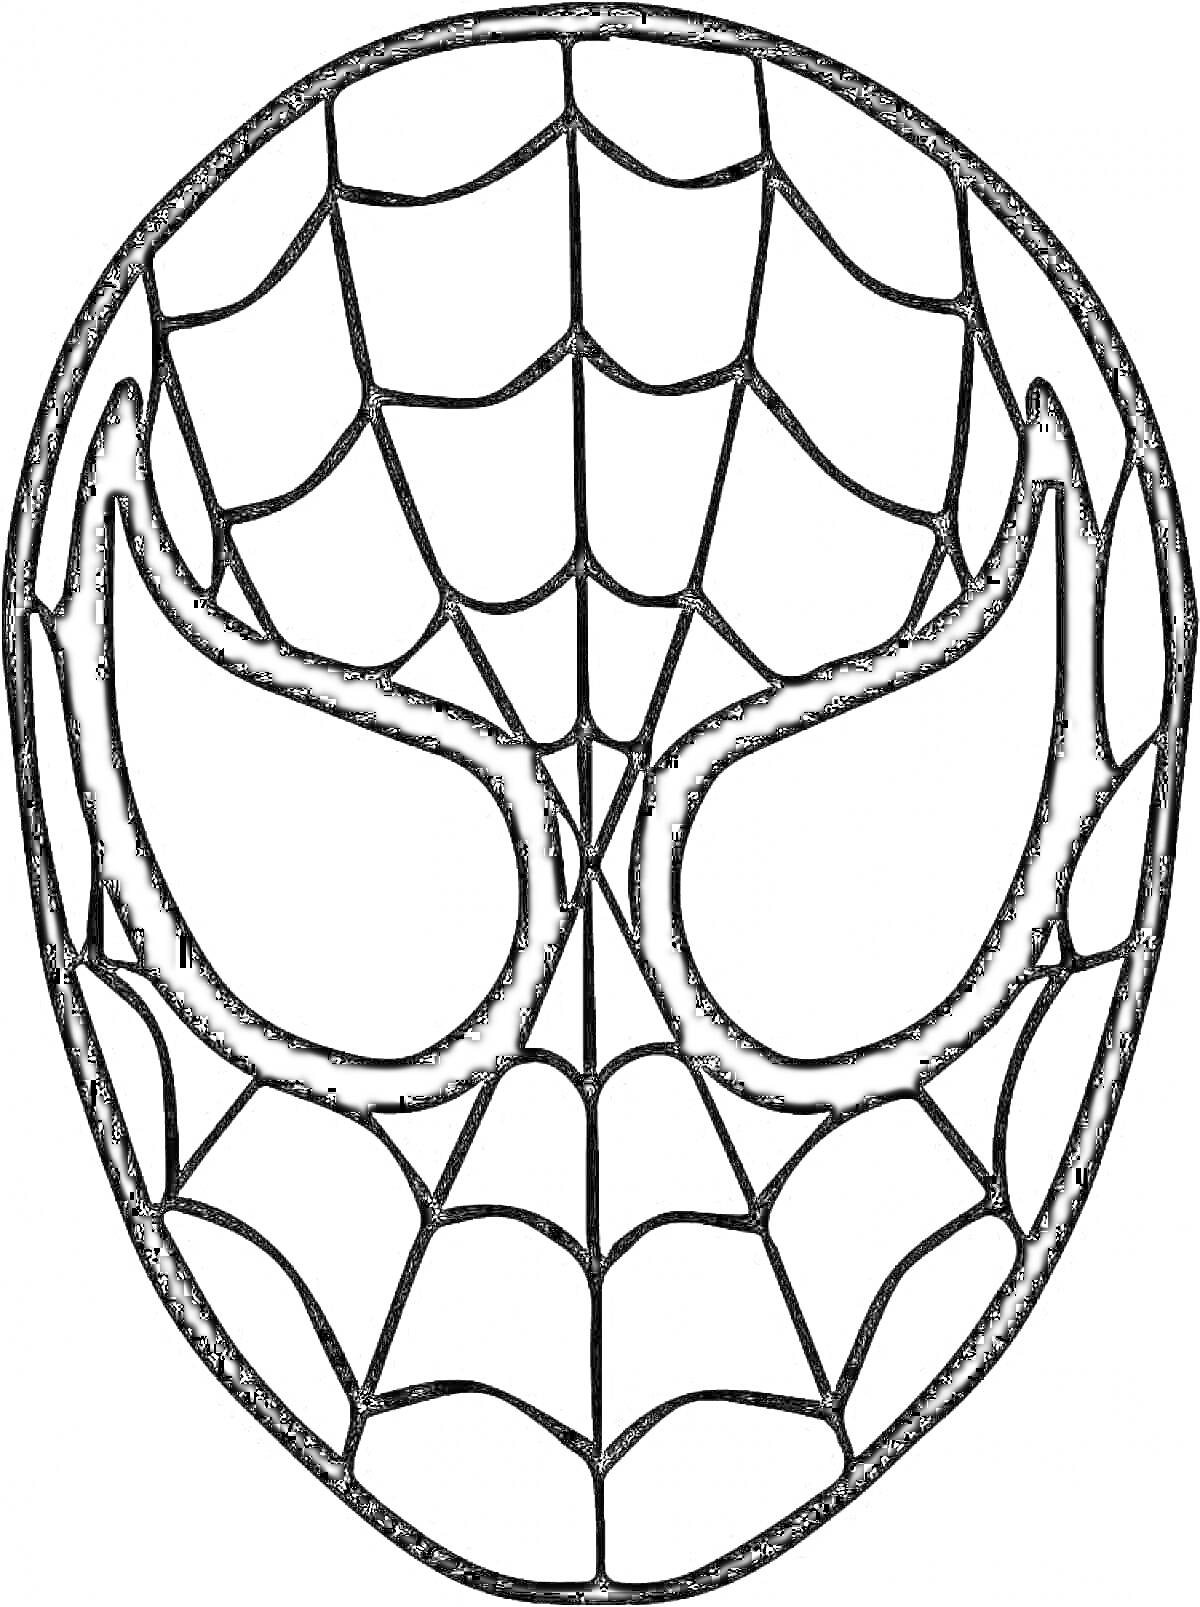 Раскраска маска человека паука с паутиной на лице и большими глазами